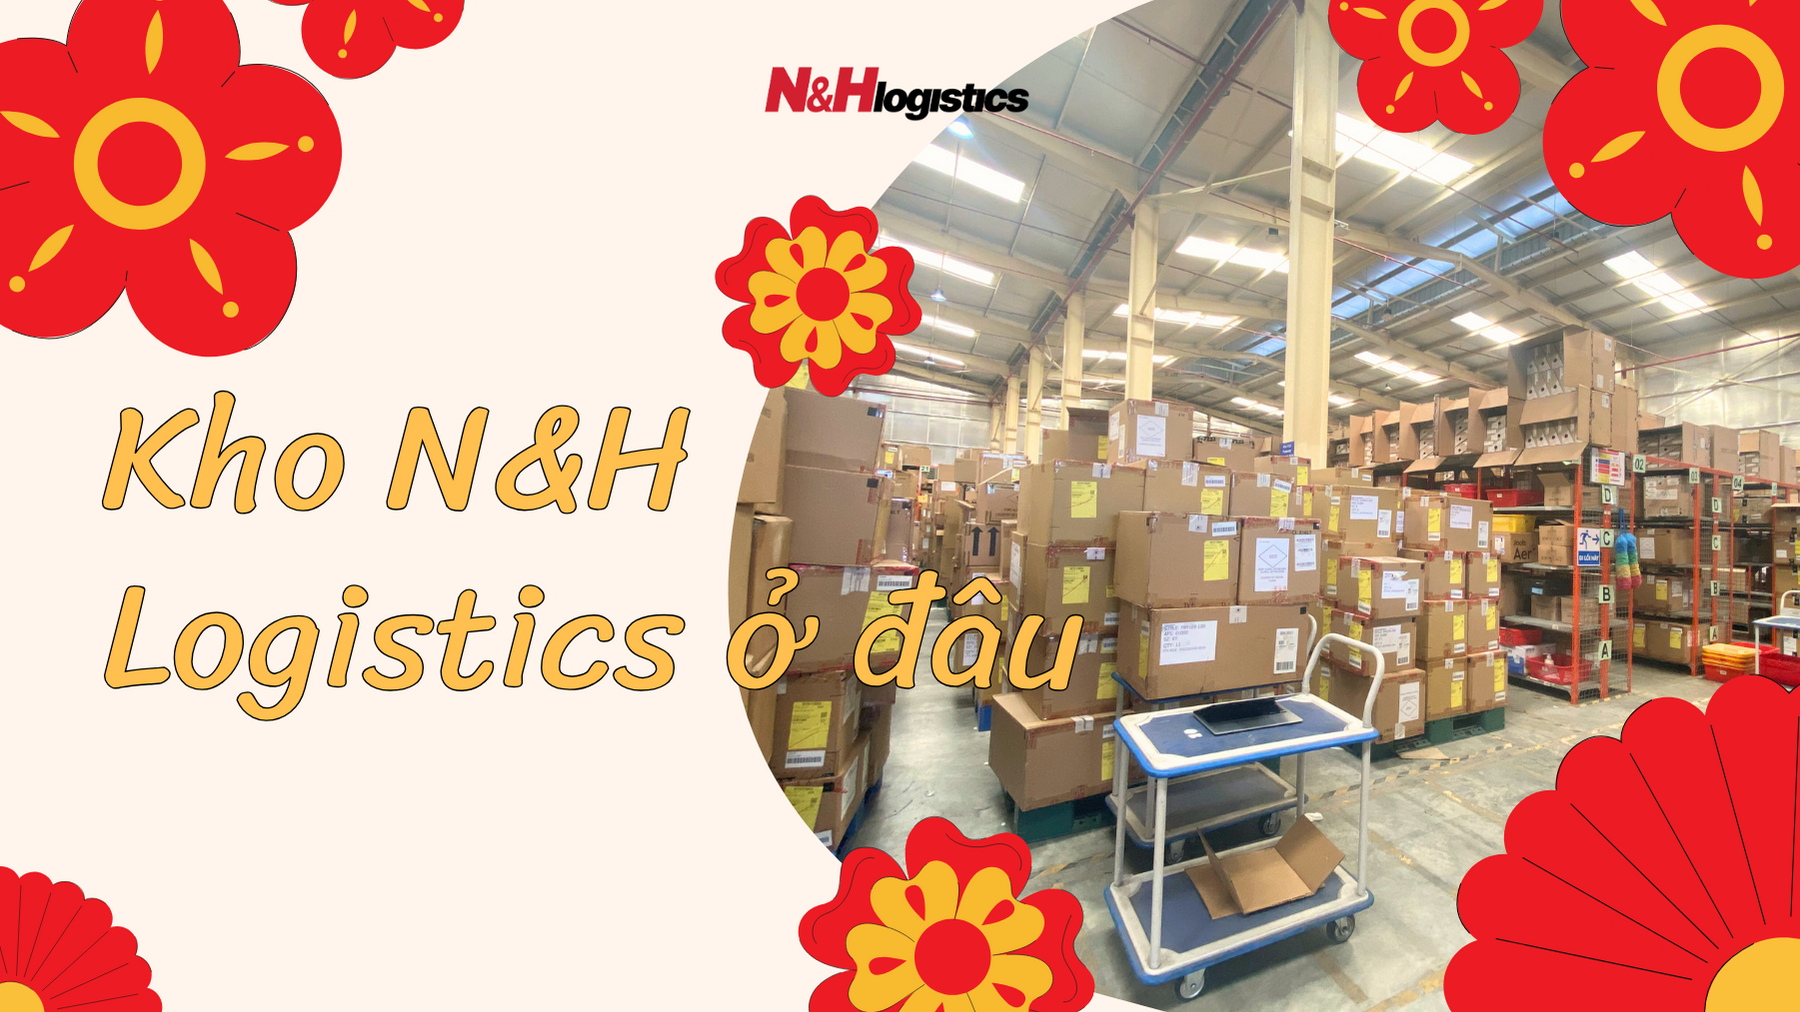 Kho N&H Logistics ở đâu? Giới thiệu về kho N&H Logistics